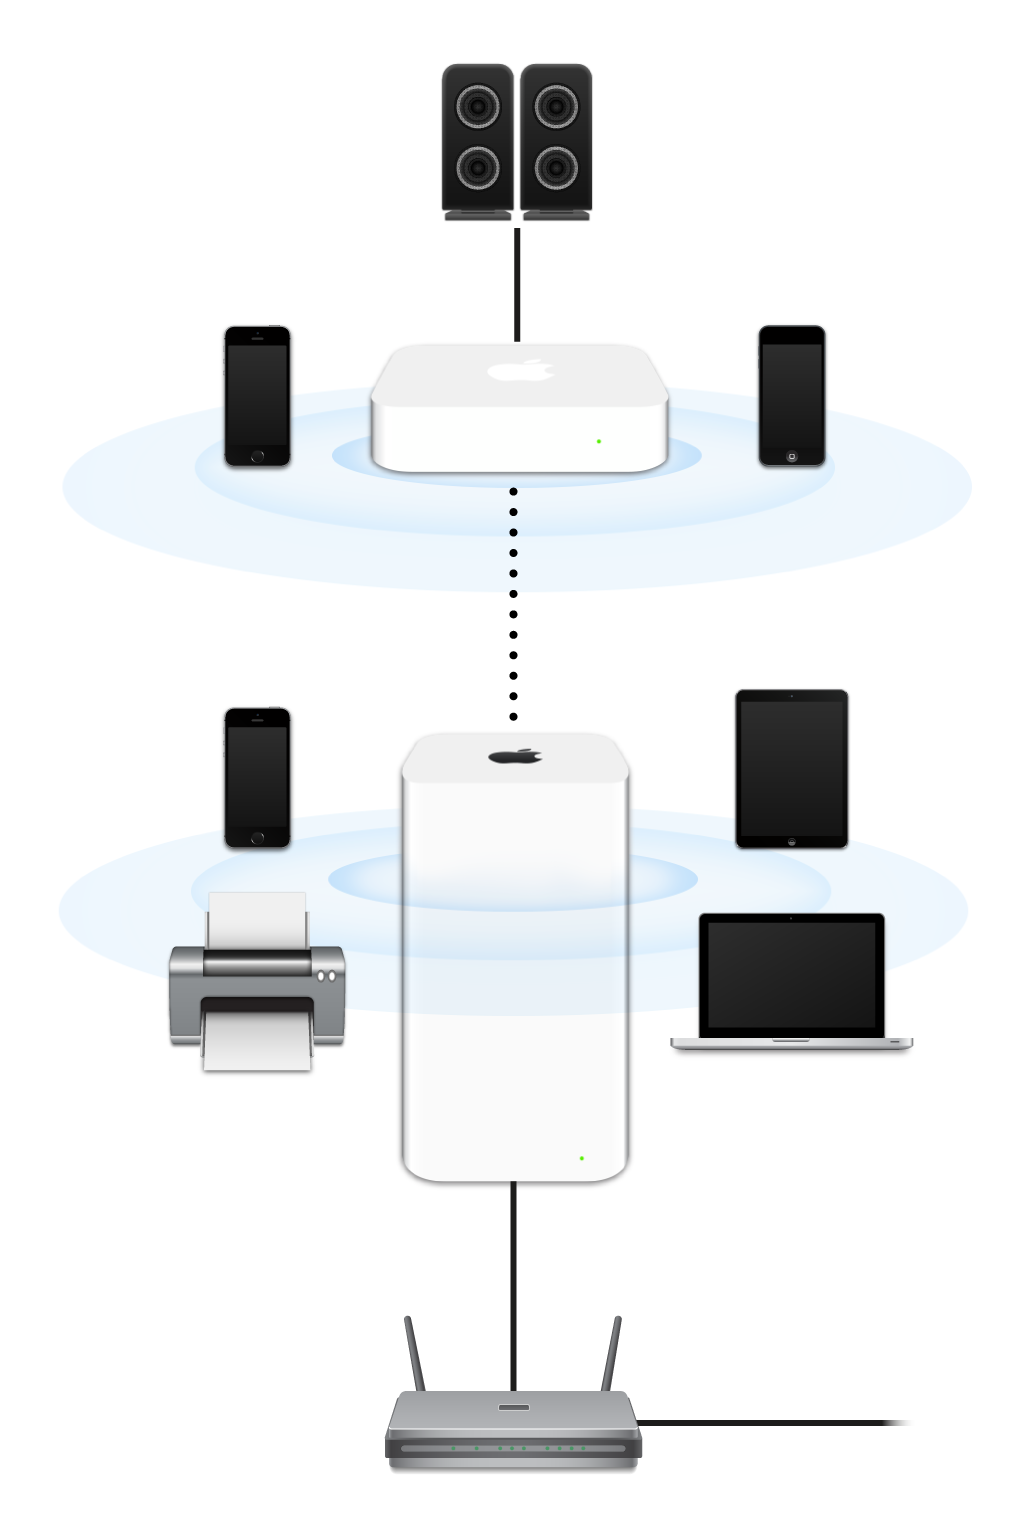 Rozšířená síť zahrnující zařízení AirPort Extreme a AirPort Express, která jsou připojena k modemu a přenášejí data do různých zařízení